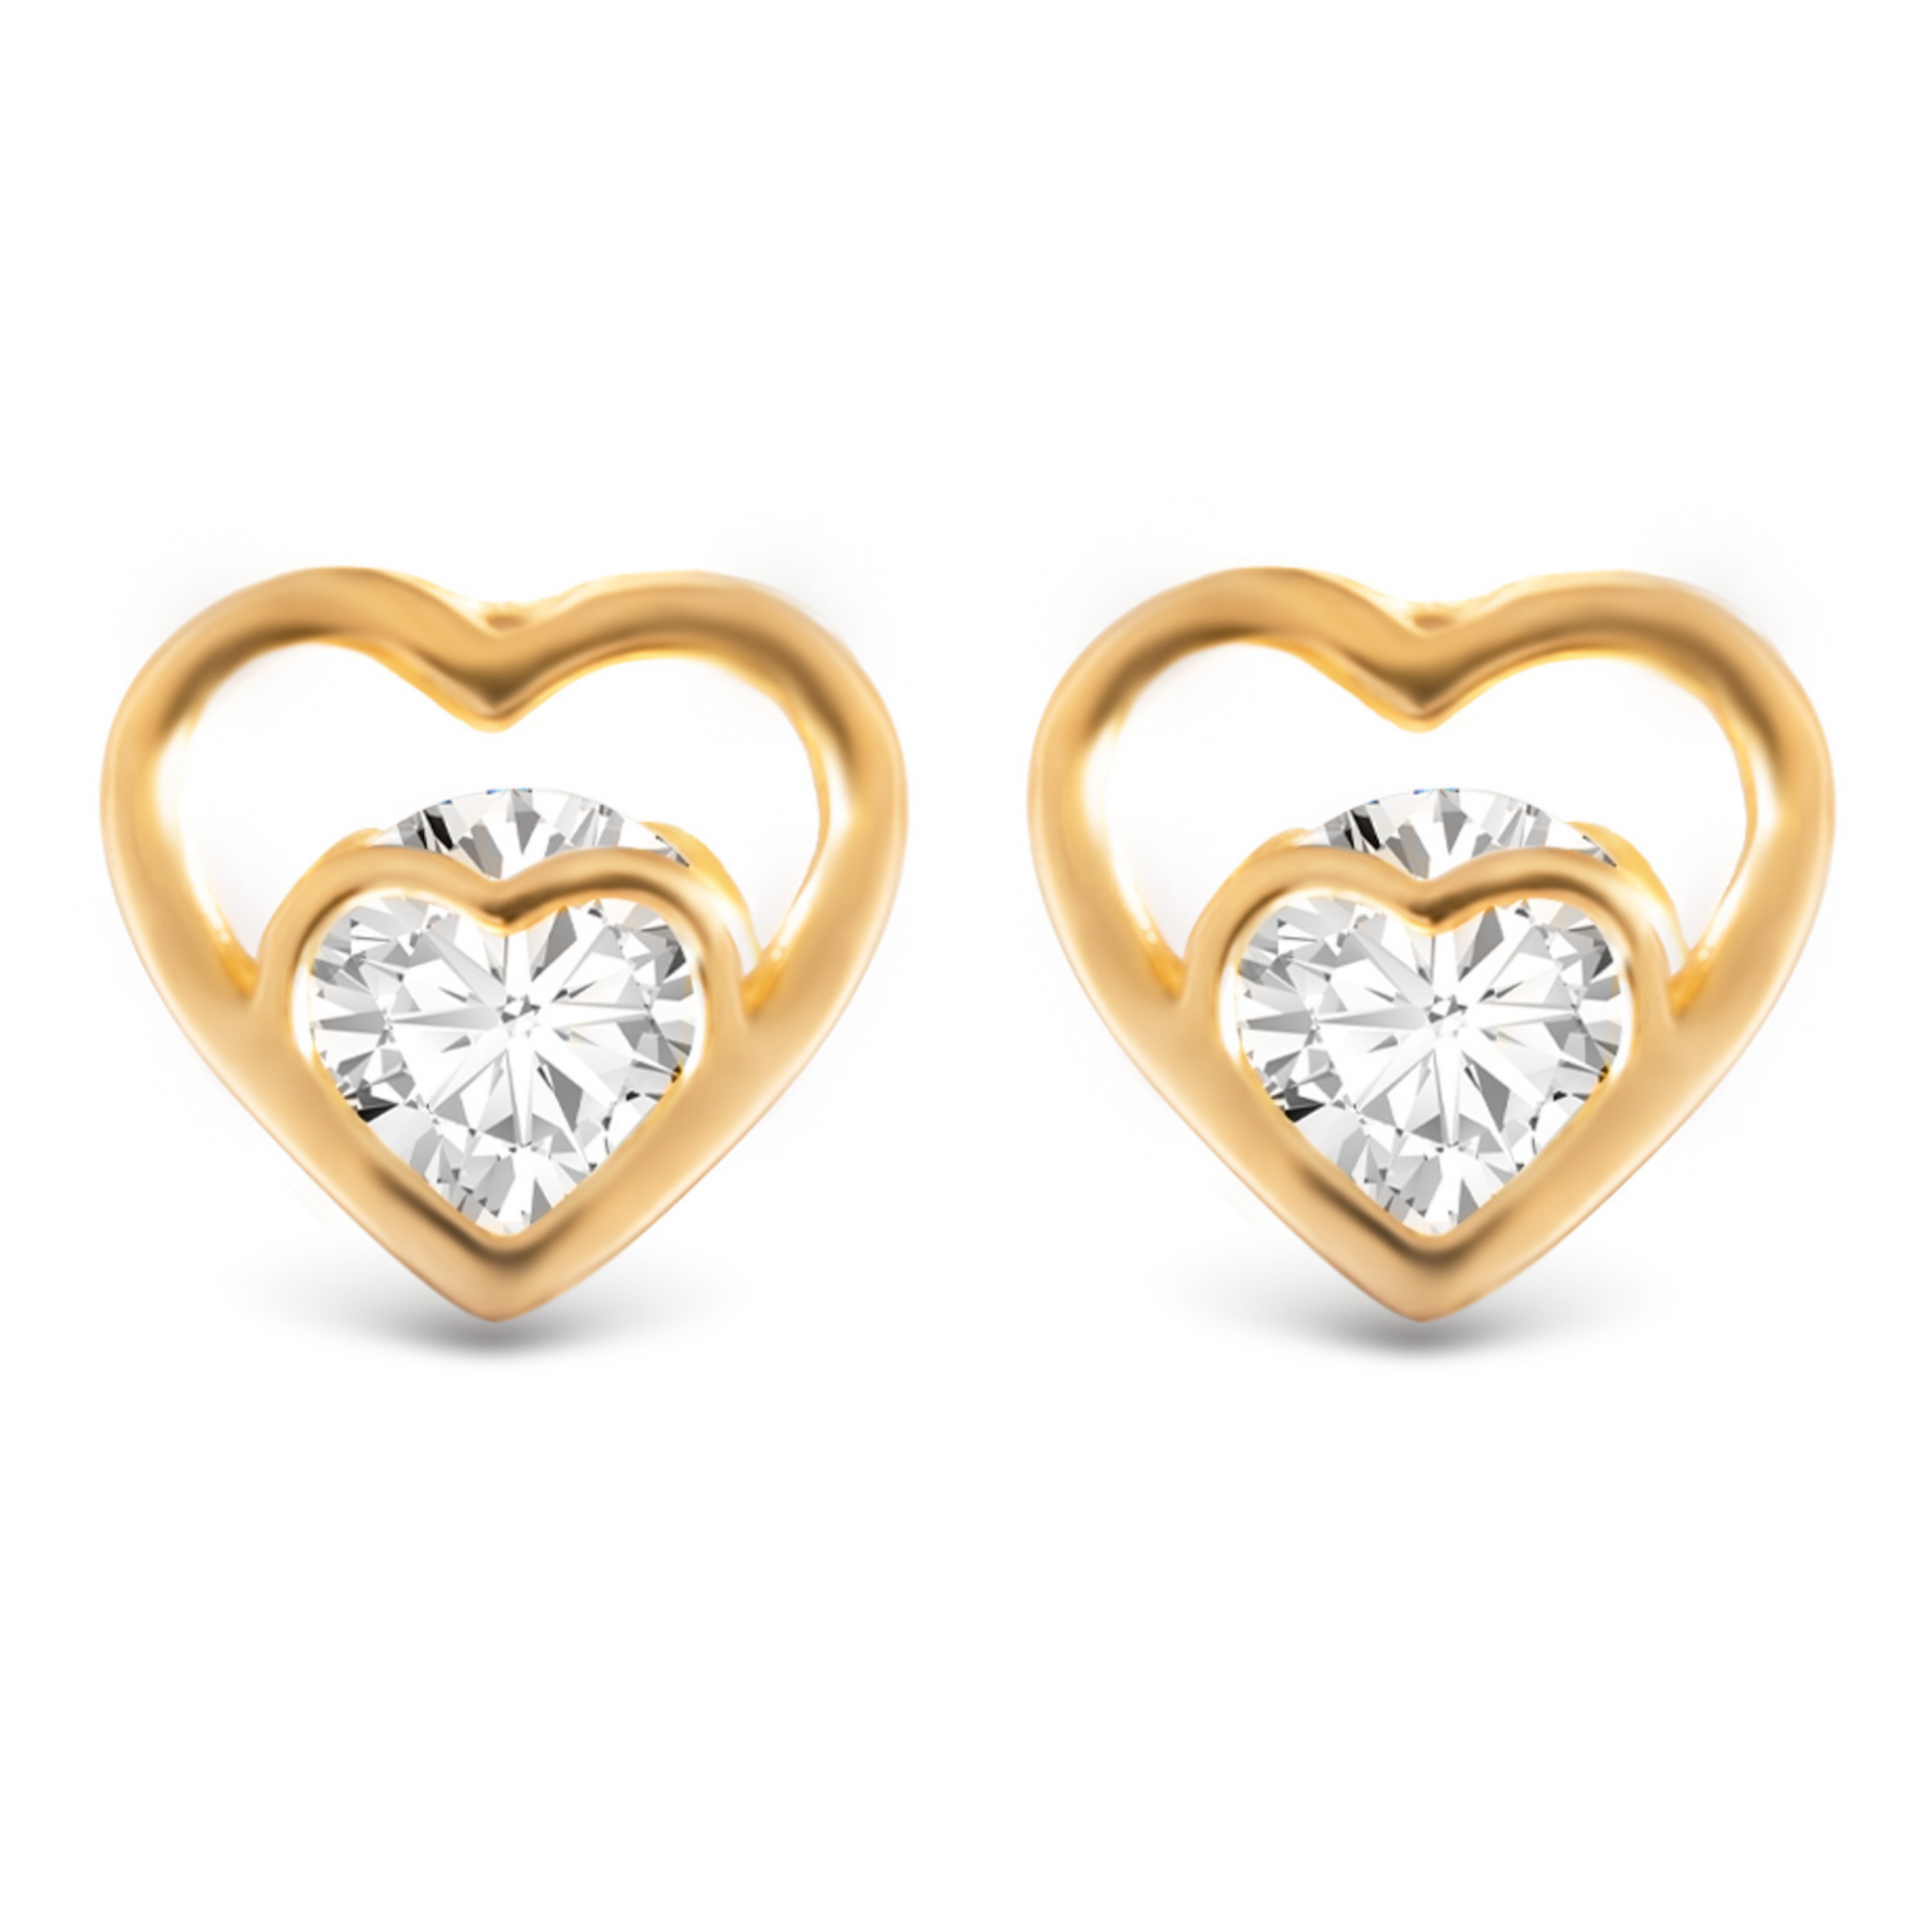 Double heart stud earrings in gold